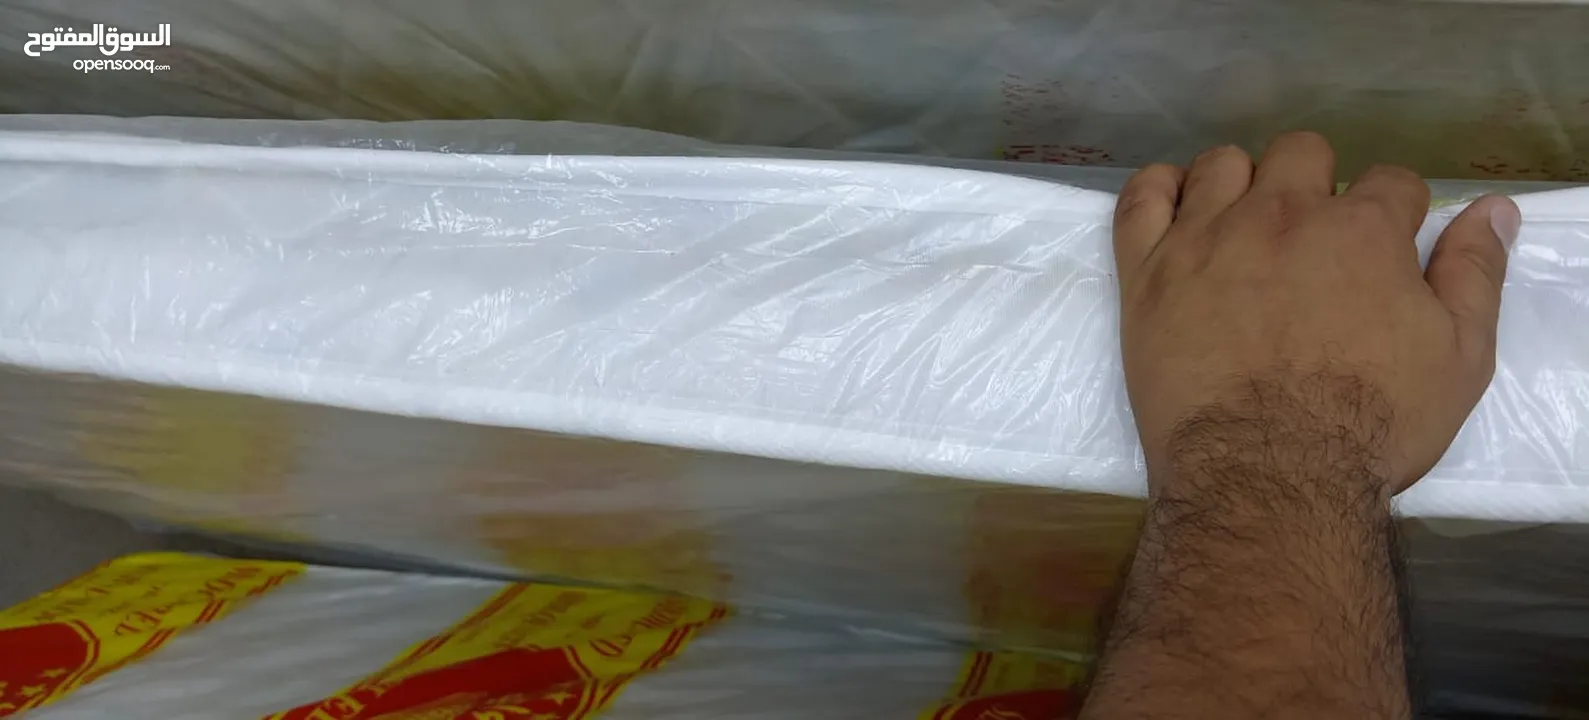 bunkbed mattress balanket pillow